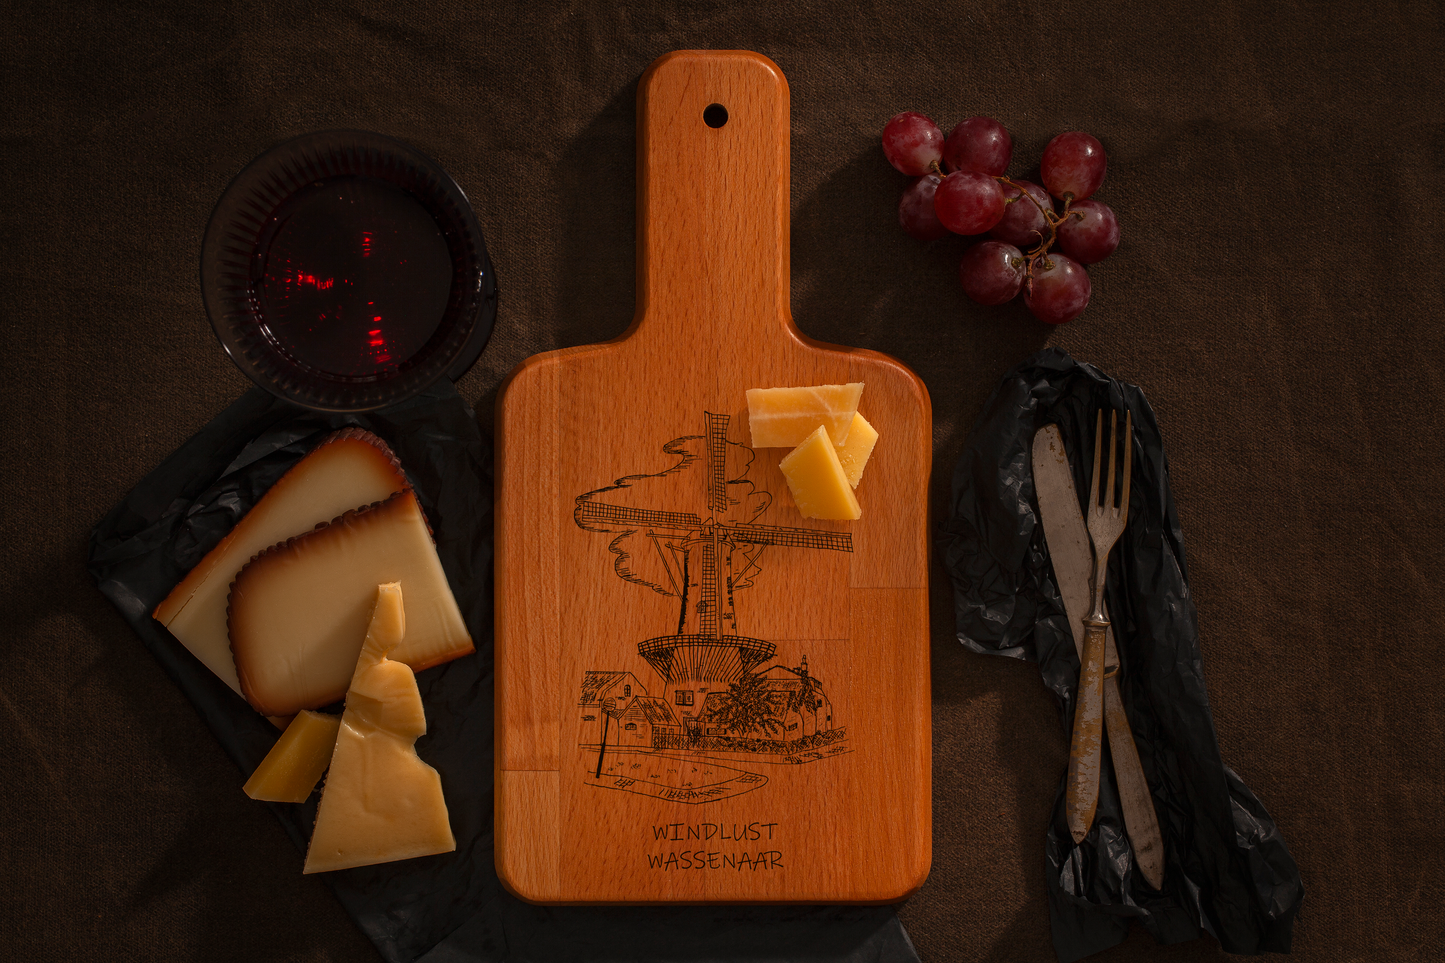 Wassenaar, Windlust, cheese board, with cheese